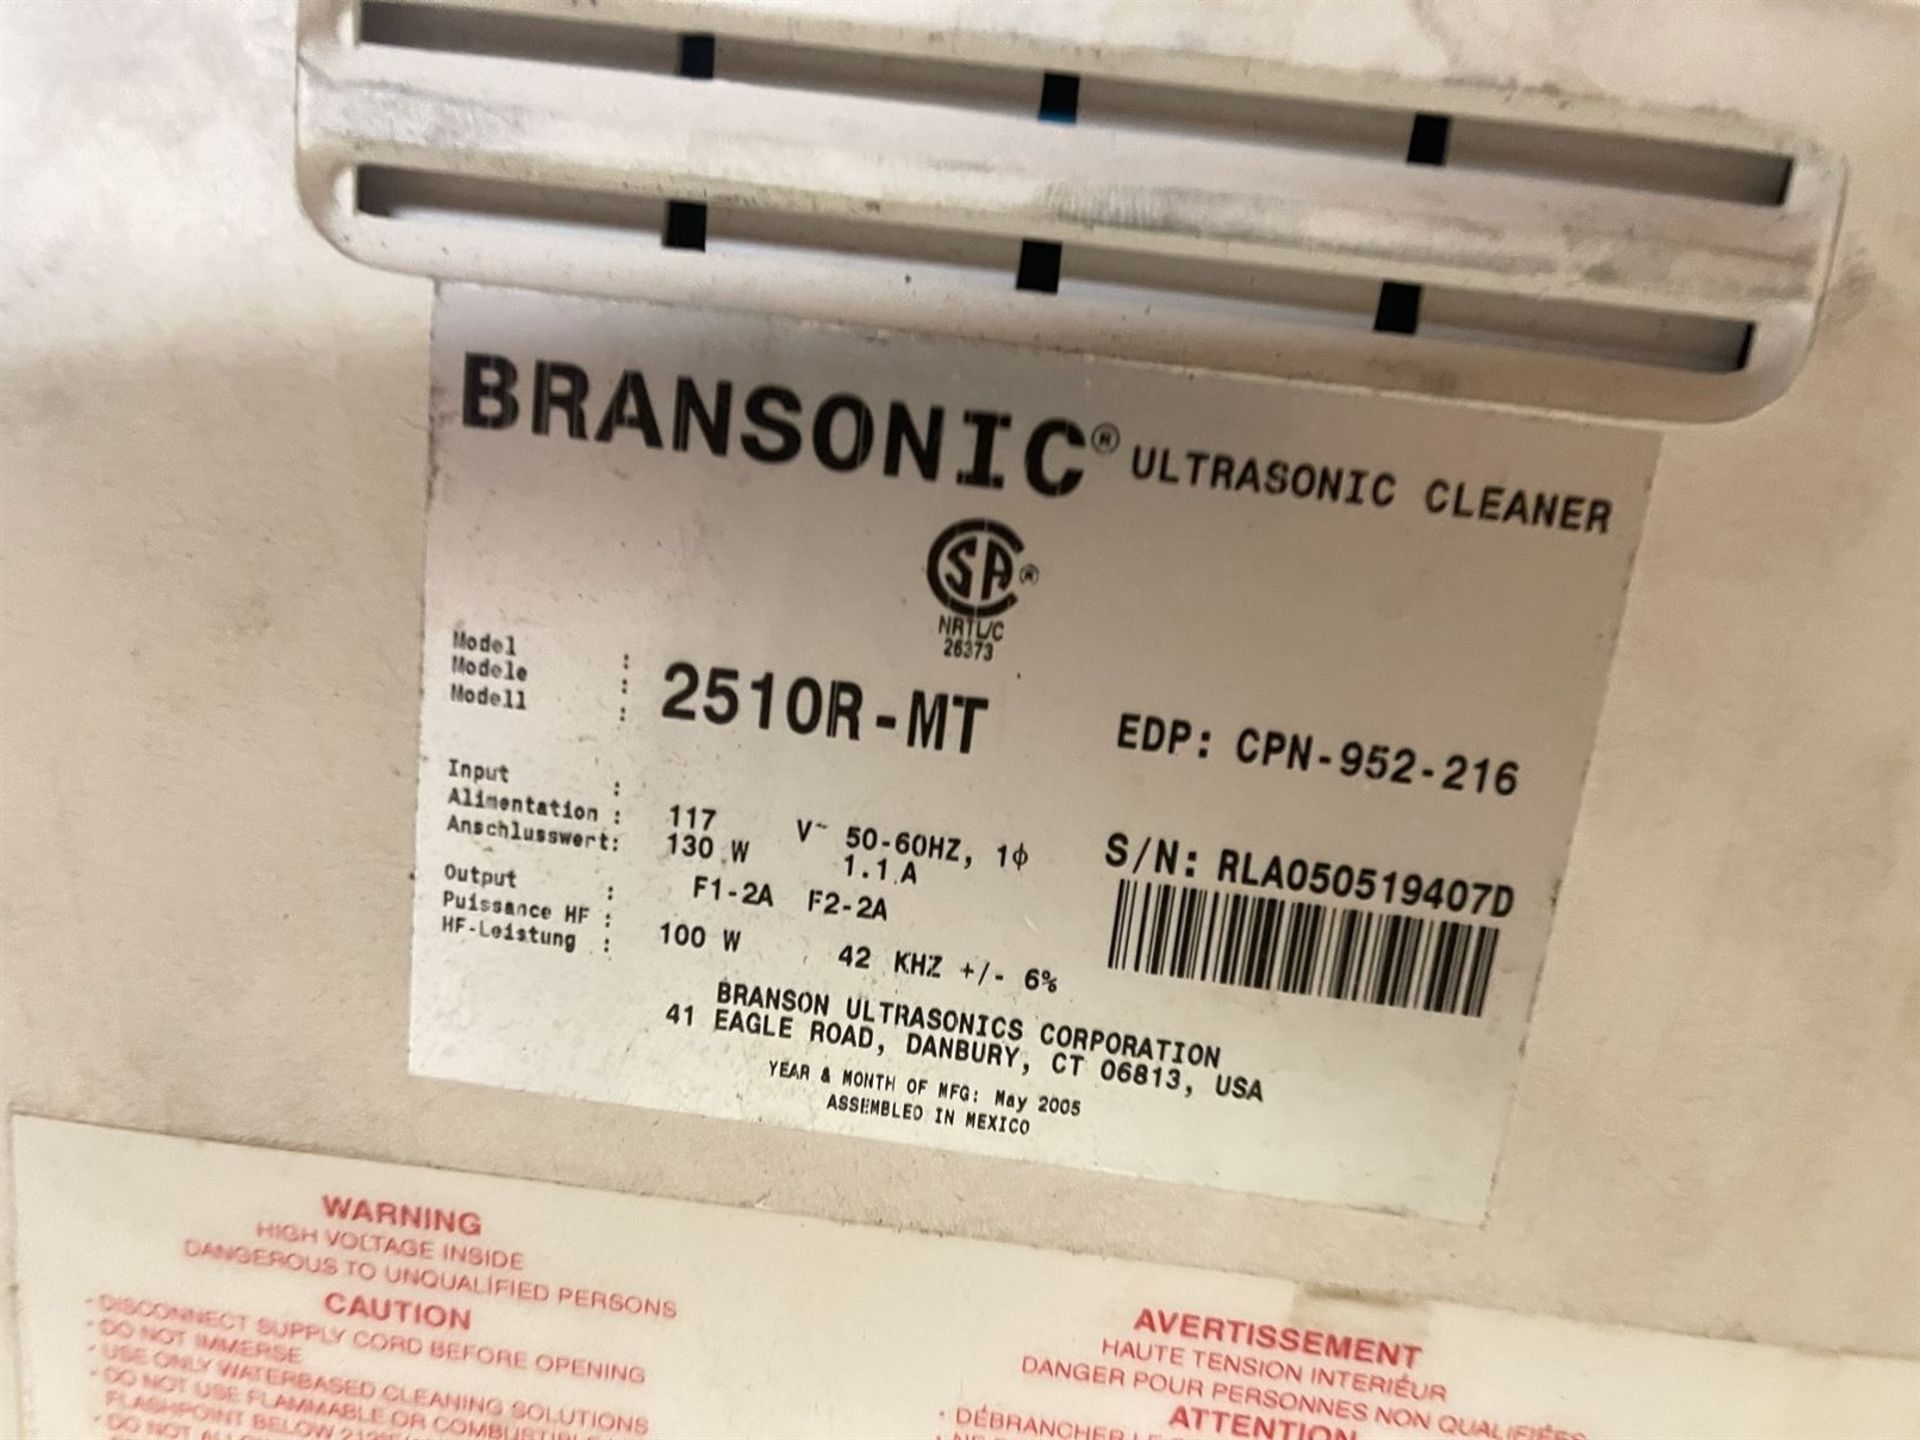 BRANSON Bransonic 2510-MT Ultrasonic Cleaner, s/n RLA050519407D - Bild 5 aus 5